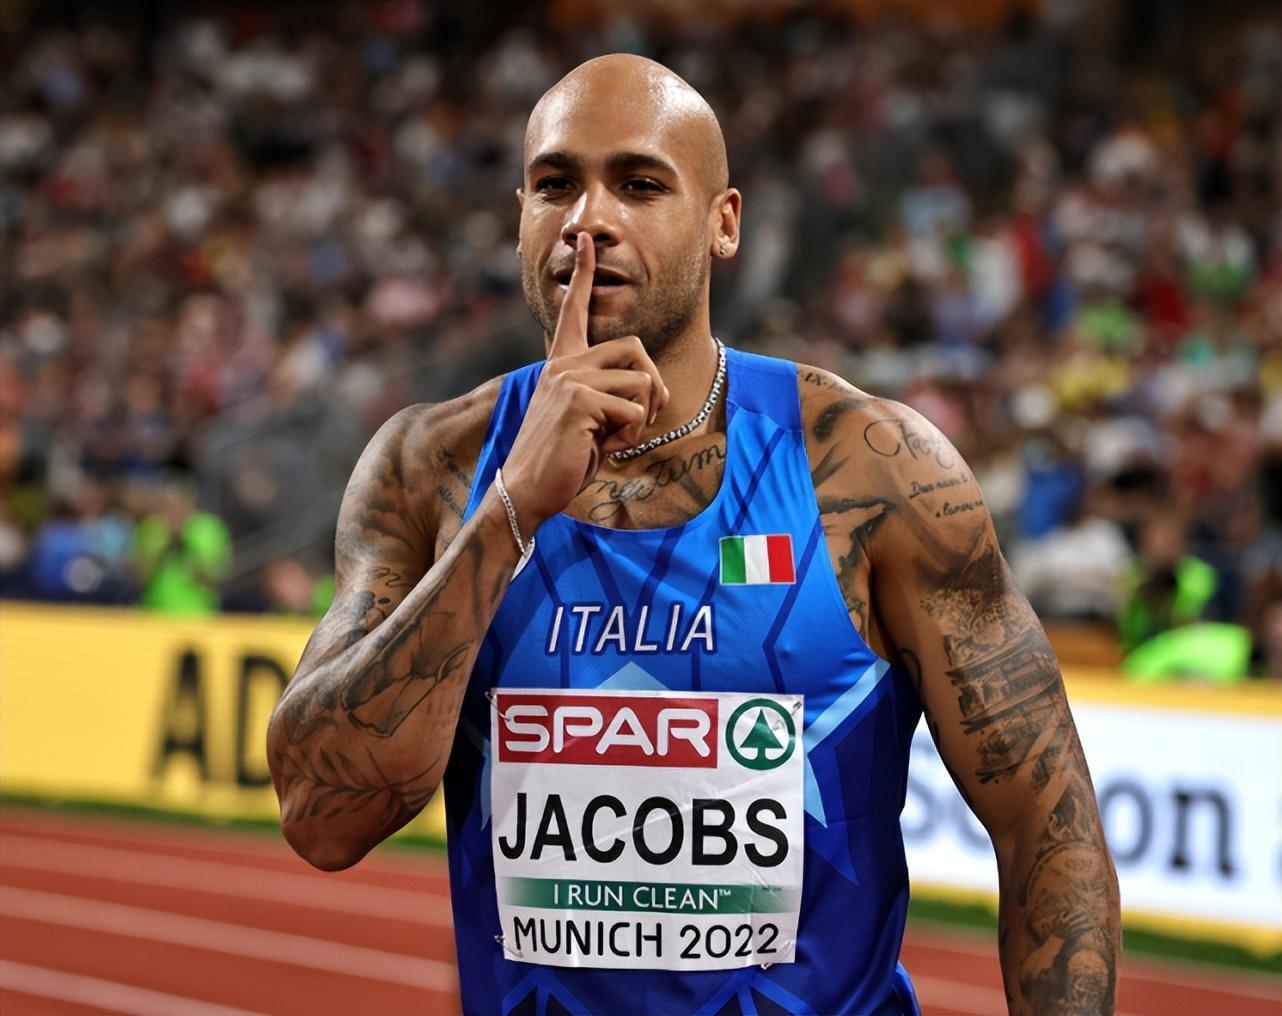 奥运百米冠军雅各布斯,回击逃跑质疑,做出闭嘴手势 